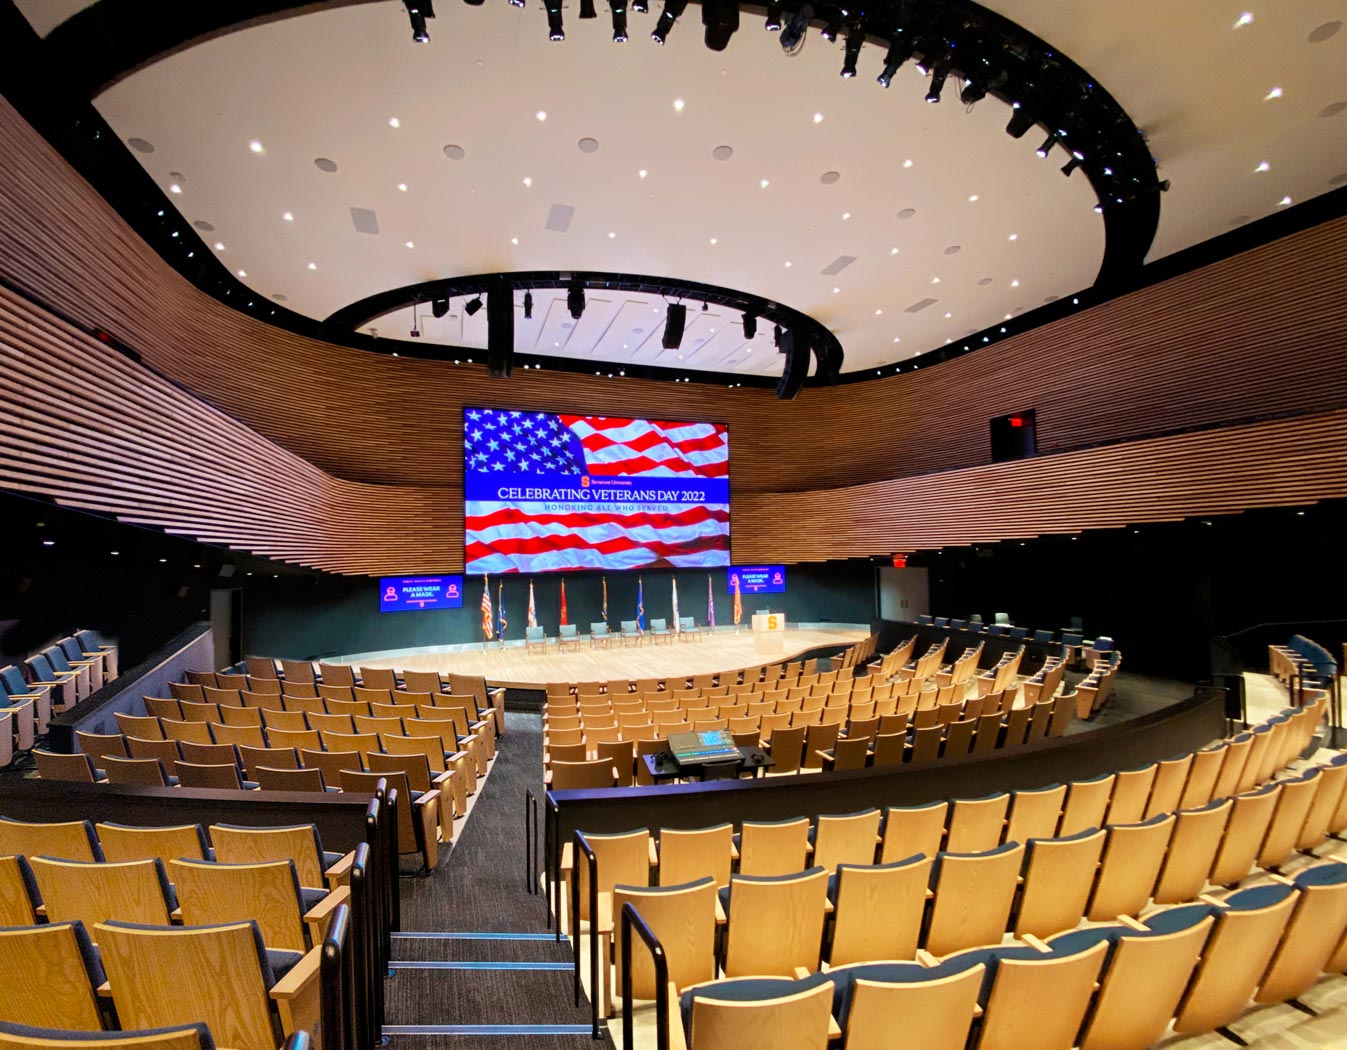  L'auditorium K. G. Tan presso il centro NVRC (National Veterans Resource Center) dell'università di Syracuse è progettato per essere un centro nevralgico nella regione centrale dello stato di New York. Ospita lezioni, attività comunitarie e conferenze e eventi convocati a livello nazionale.